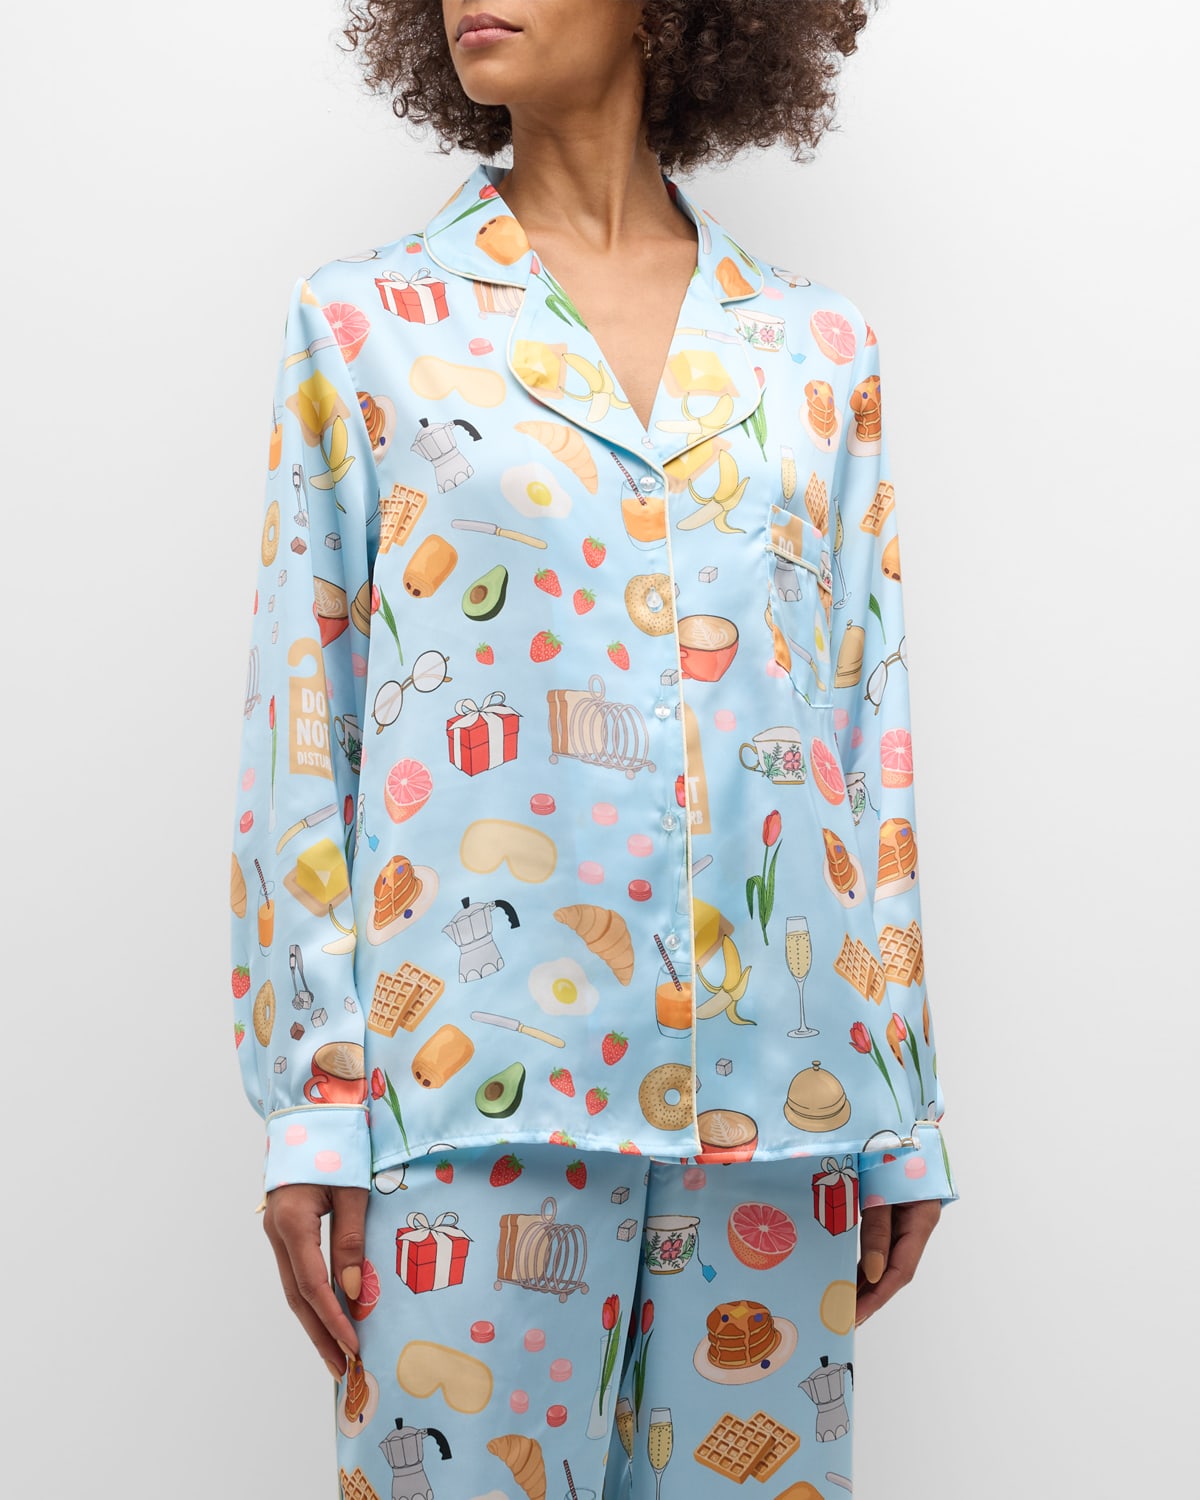 Breakfast In Bed Printed Pajama Set